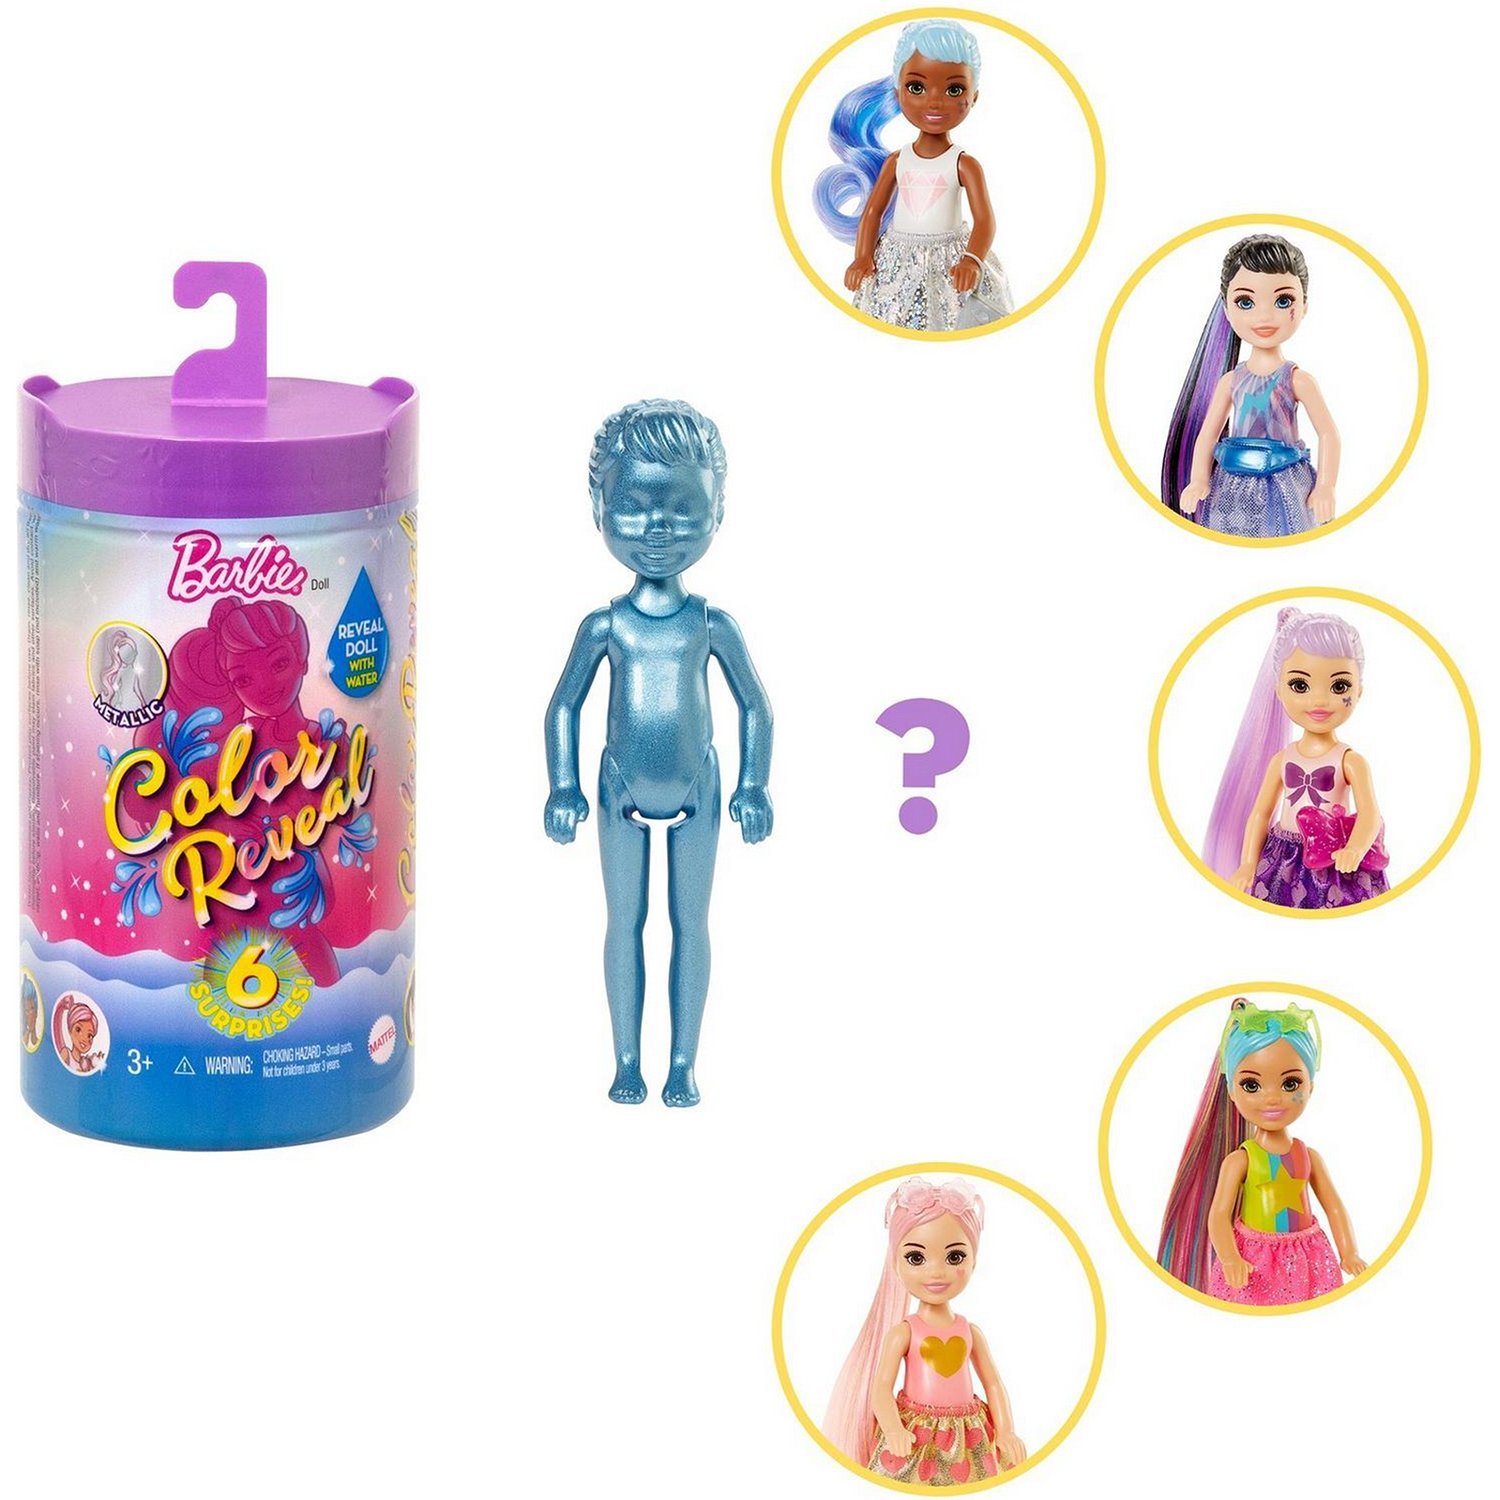 Кукла-сюрприз Barbie Челси Волна 1 с блестящими куклами сюрпризами внутри